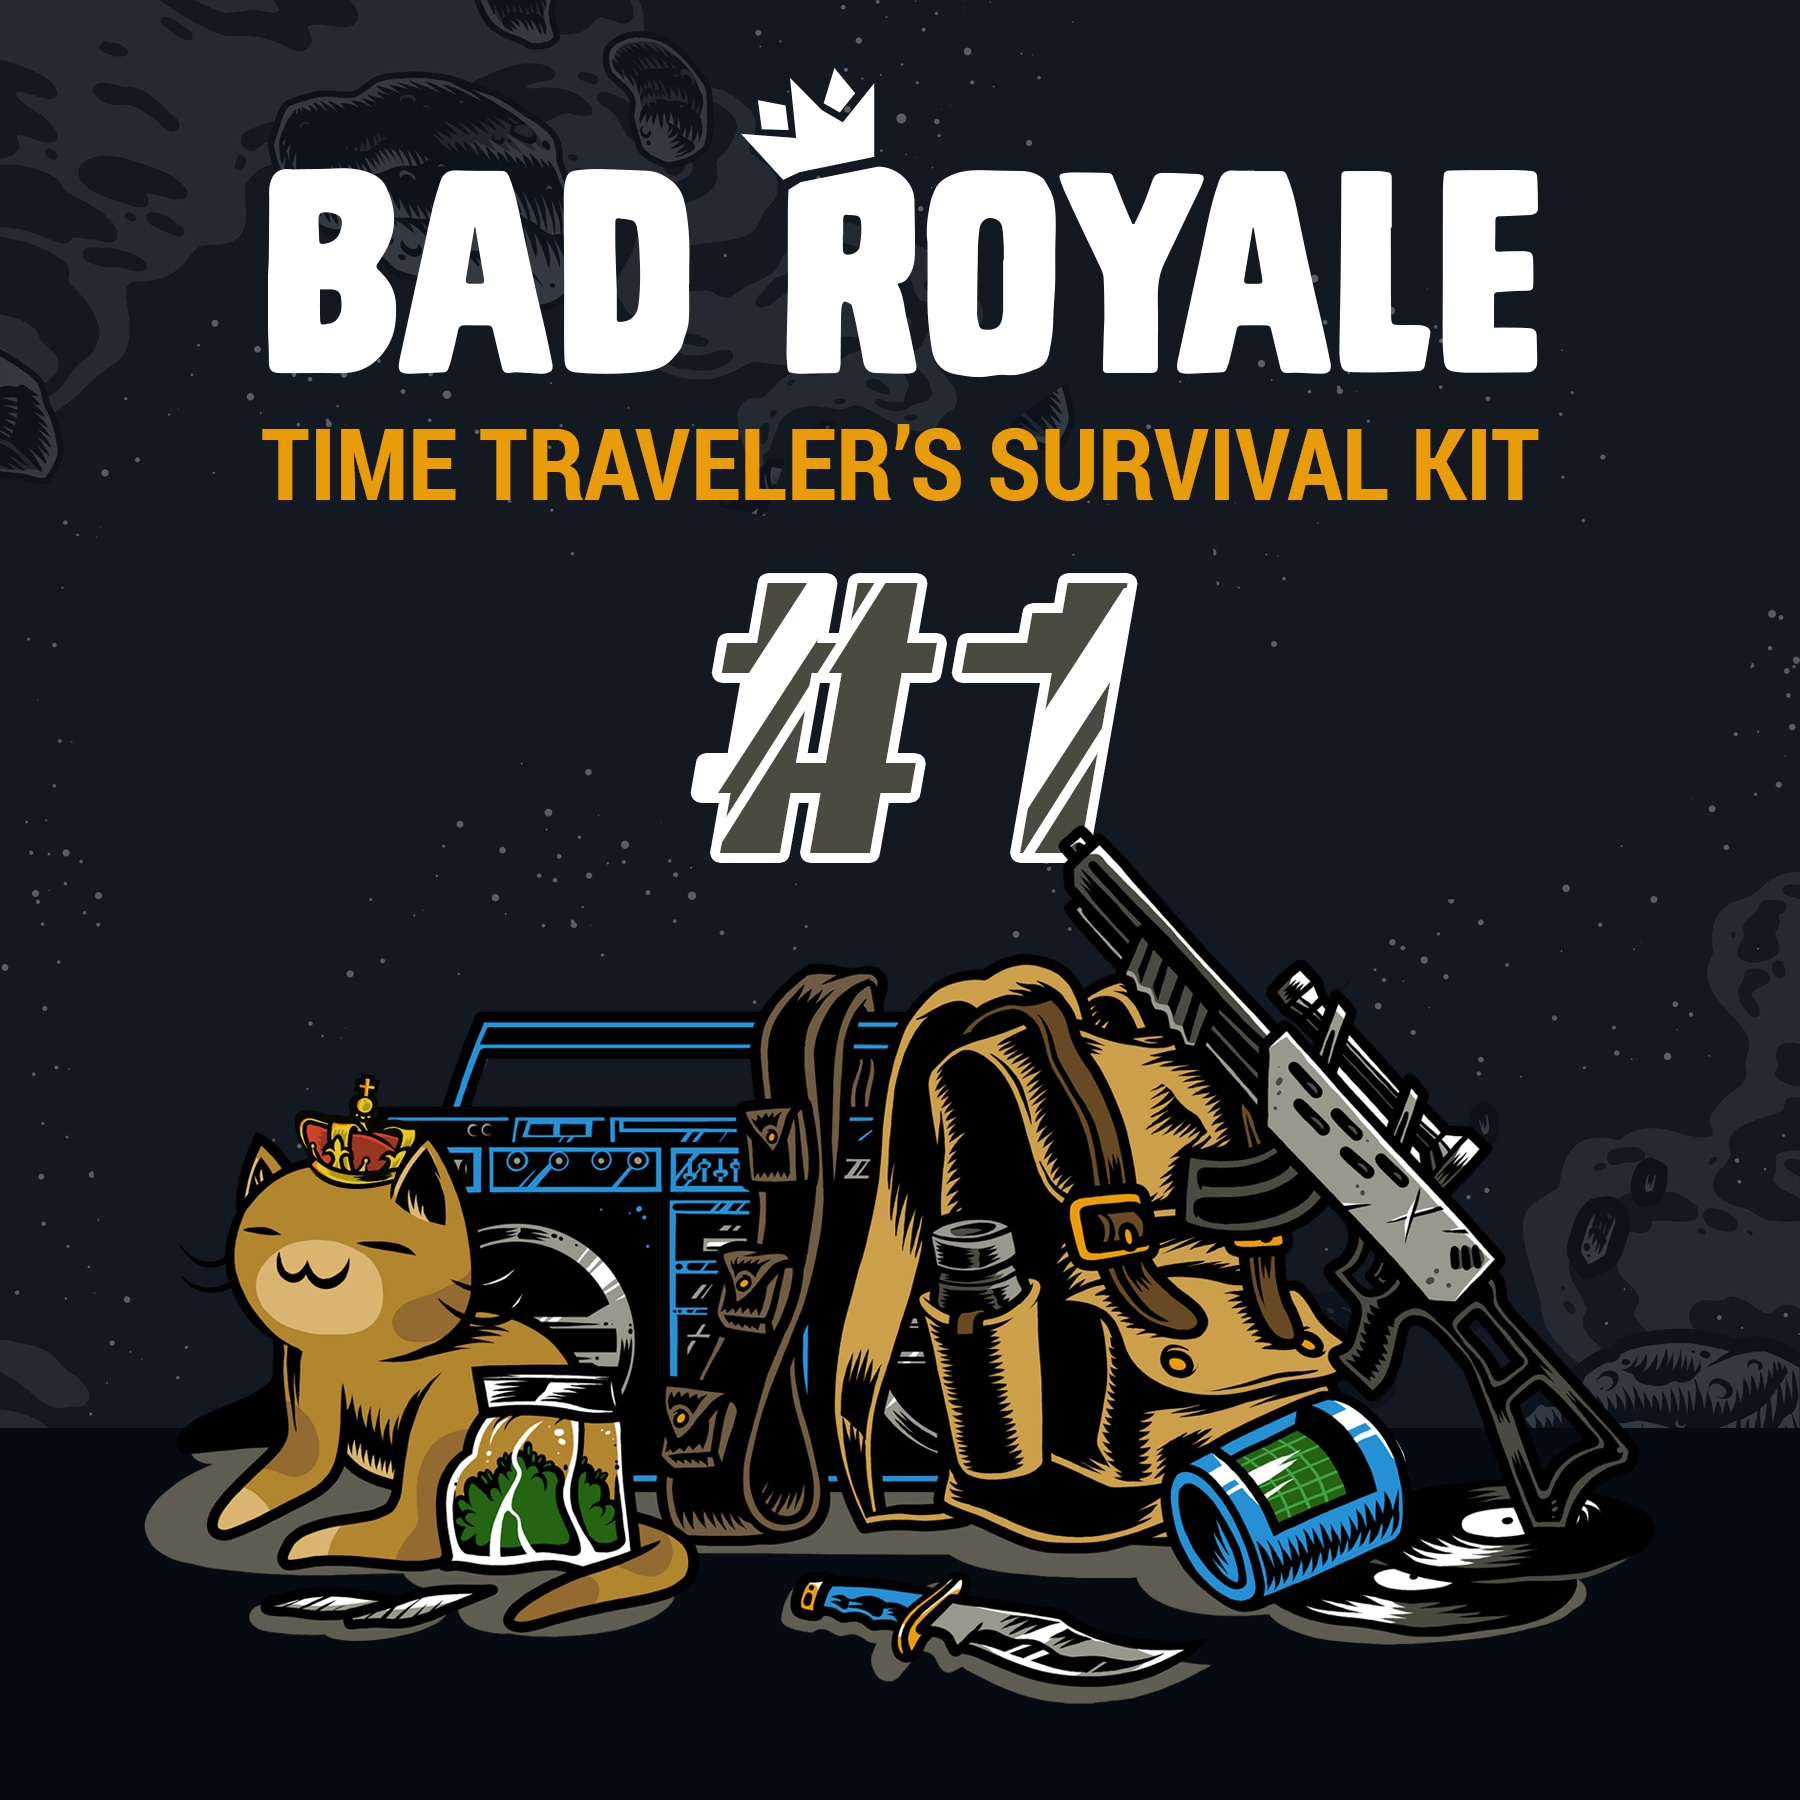 Time Traveler's Survival Kit